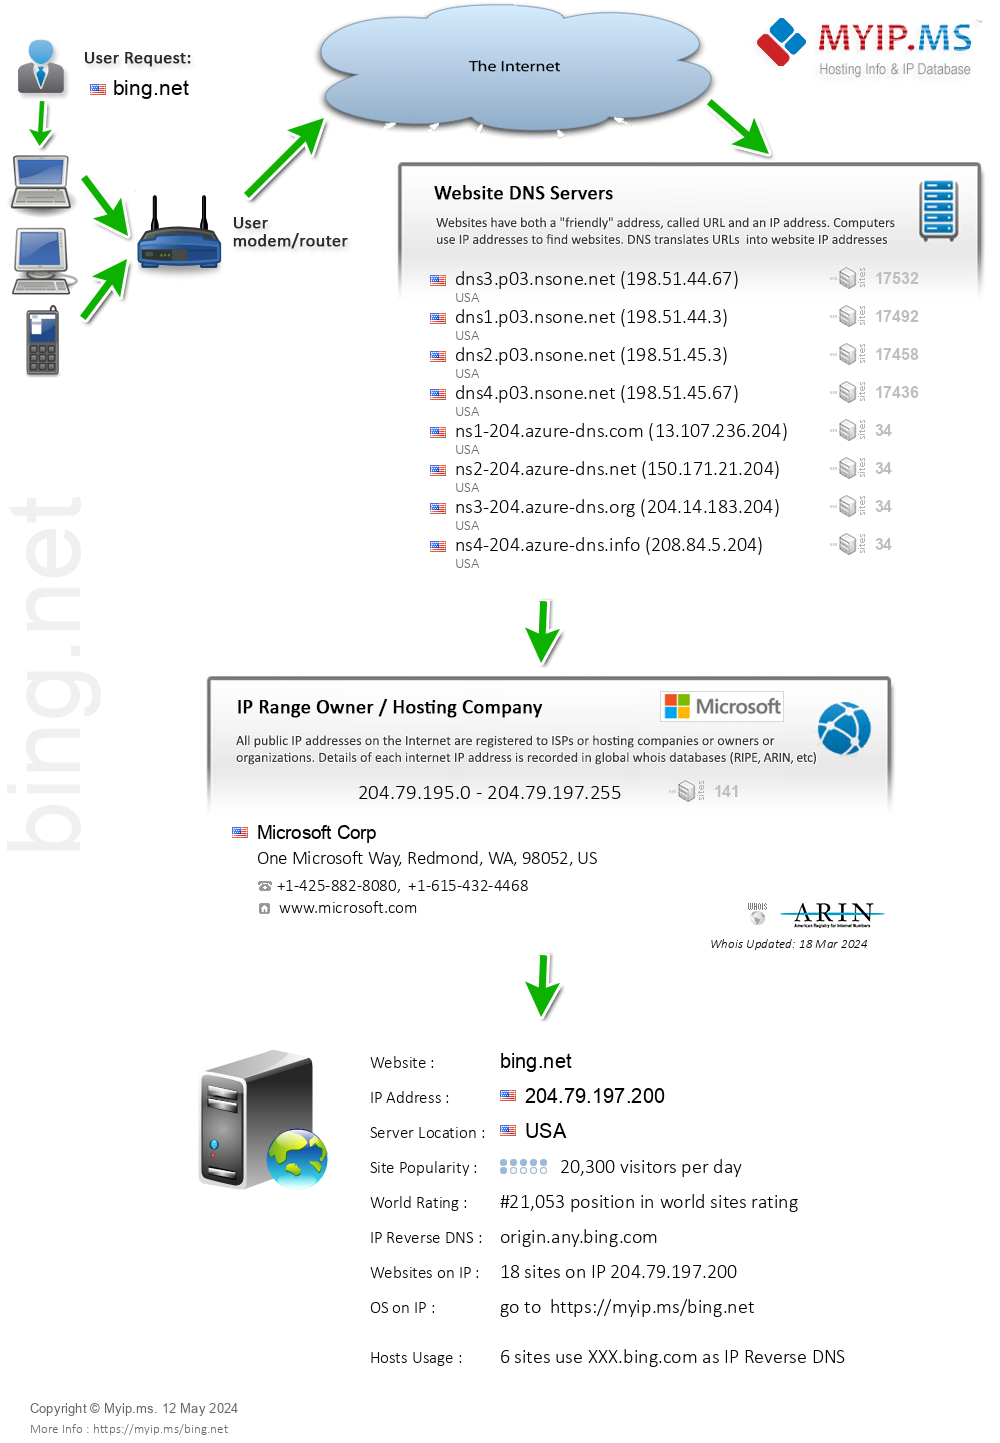 Bing.net - Website Hosting Visual IP Diagram